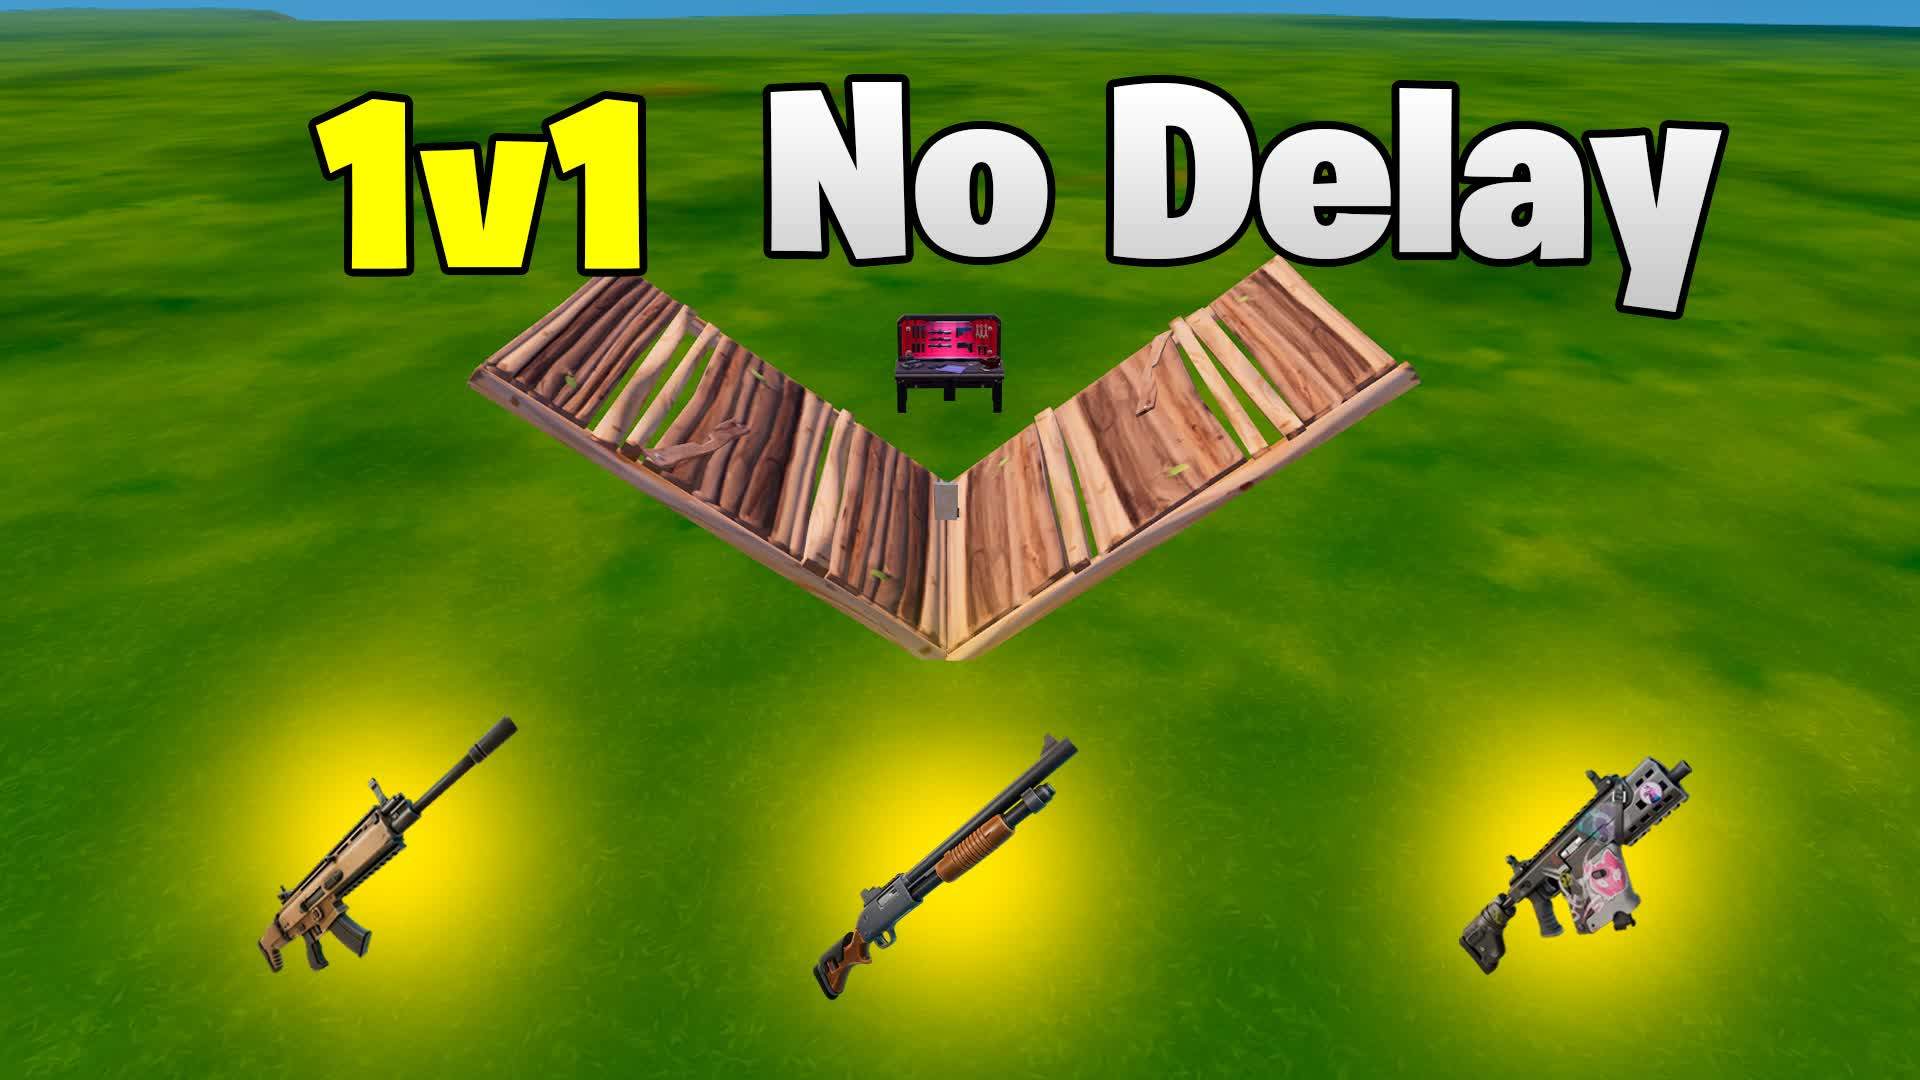 Nova 1v1 0 Delay - Chapter 5 Guns